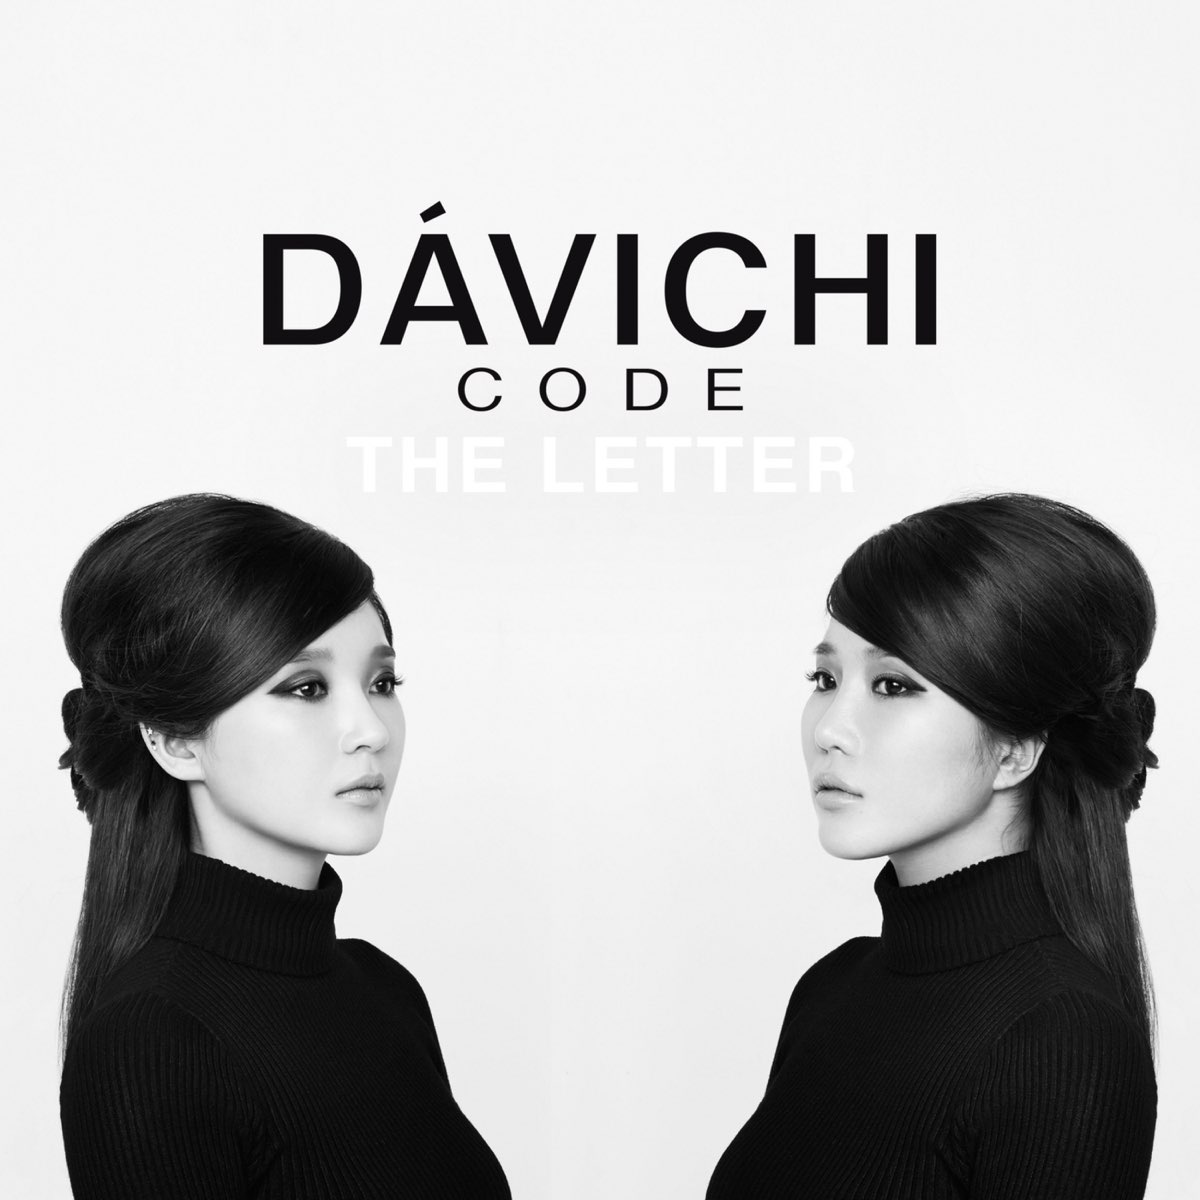 ‎다비치코드 - 편지 - Single by Davichi on Apple Music